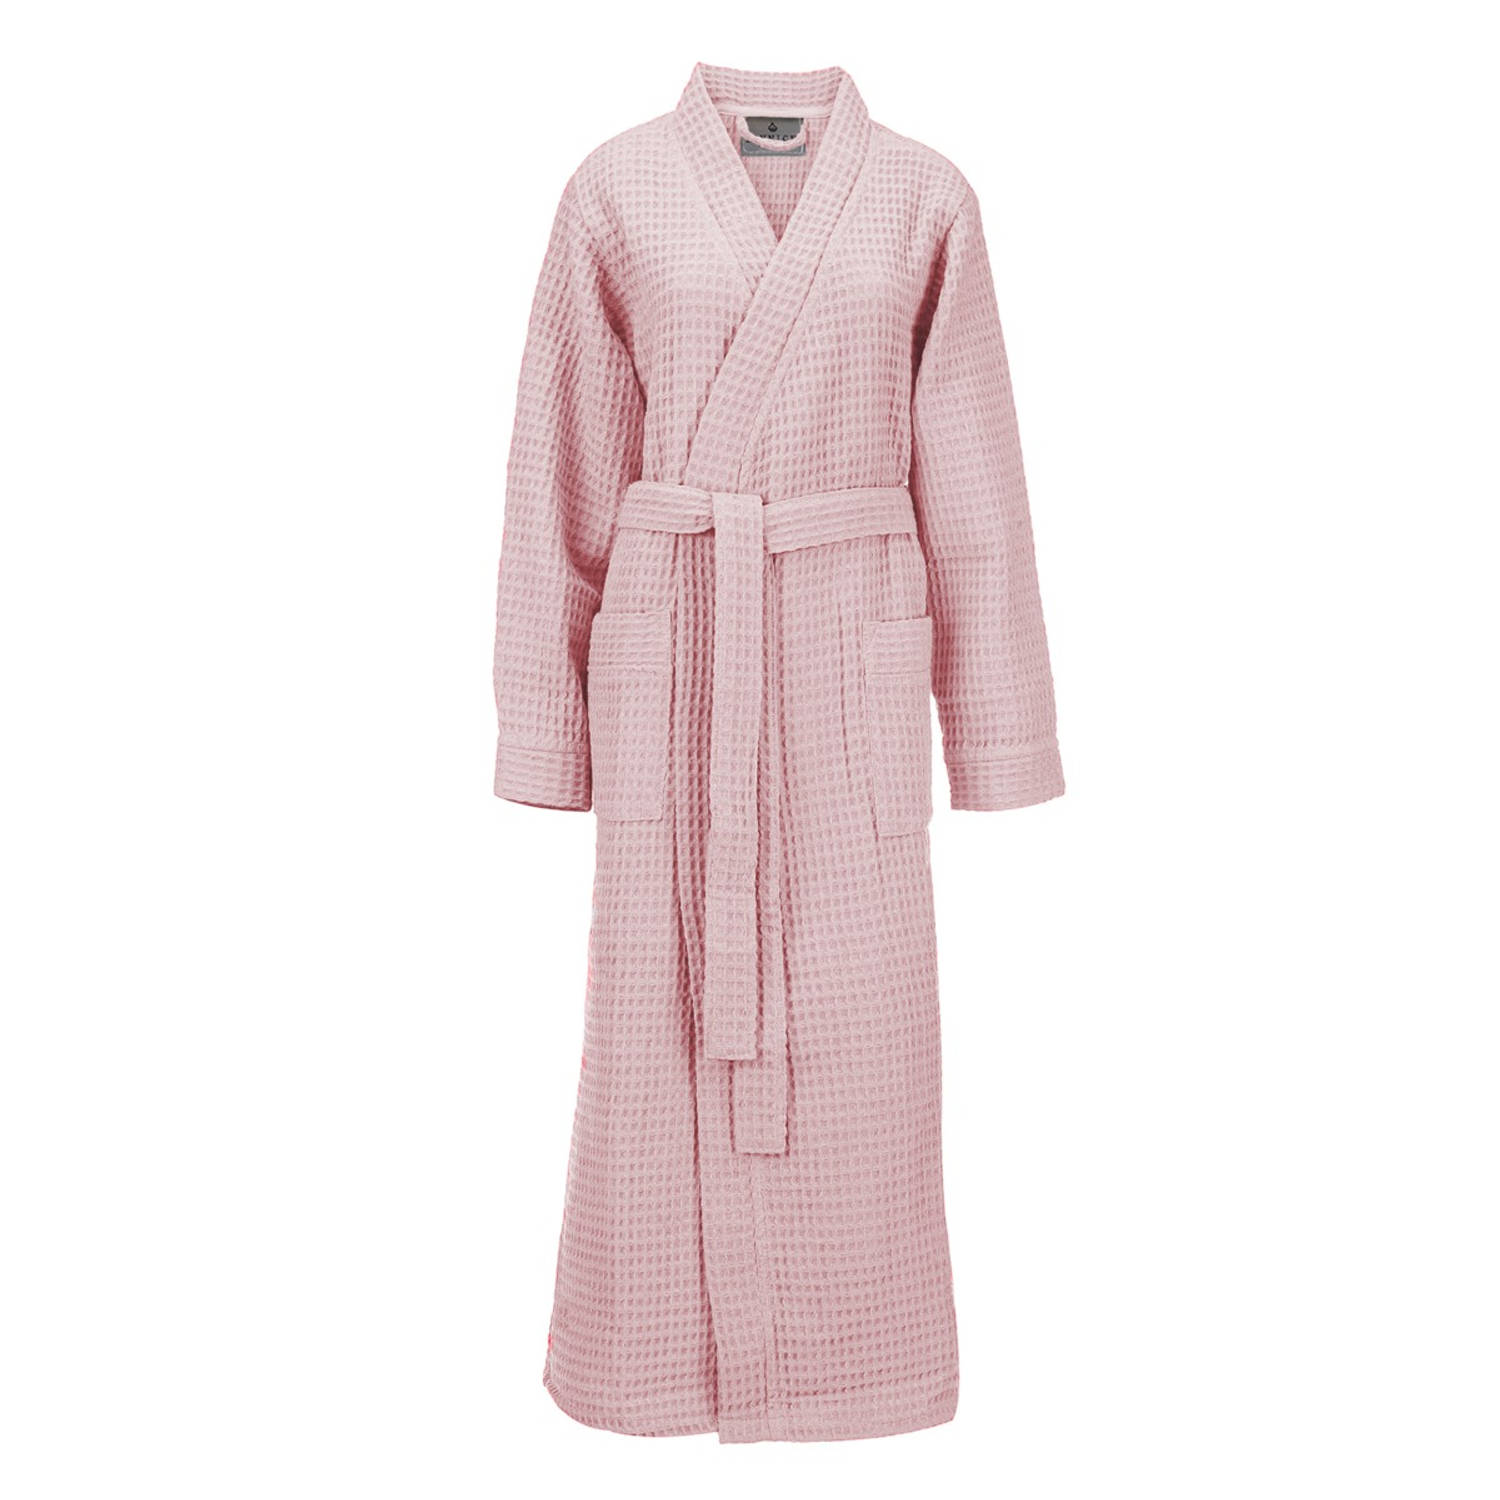 LINNICK Wafel Badjas - Maat L - Light Pink - Sauna badjas - 100% Katoen Badjas Dames - Badjas Heren